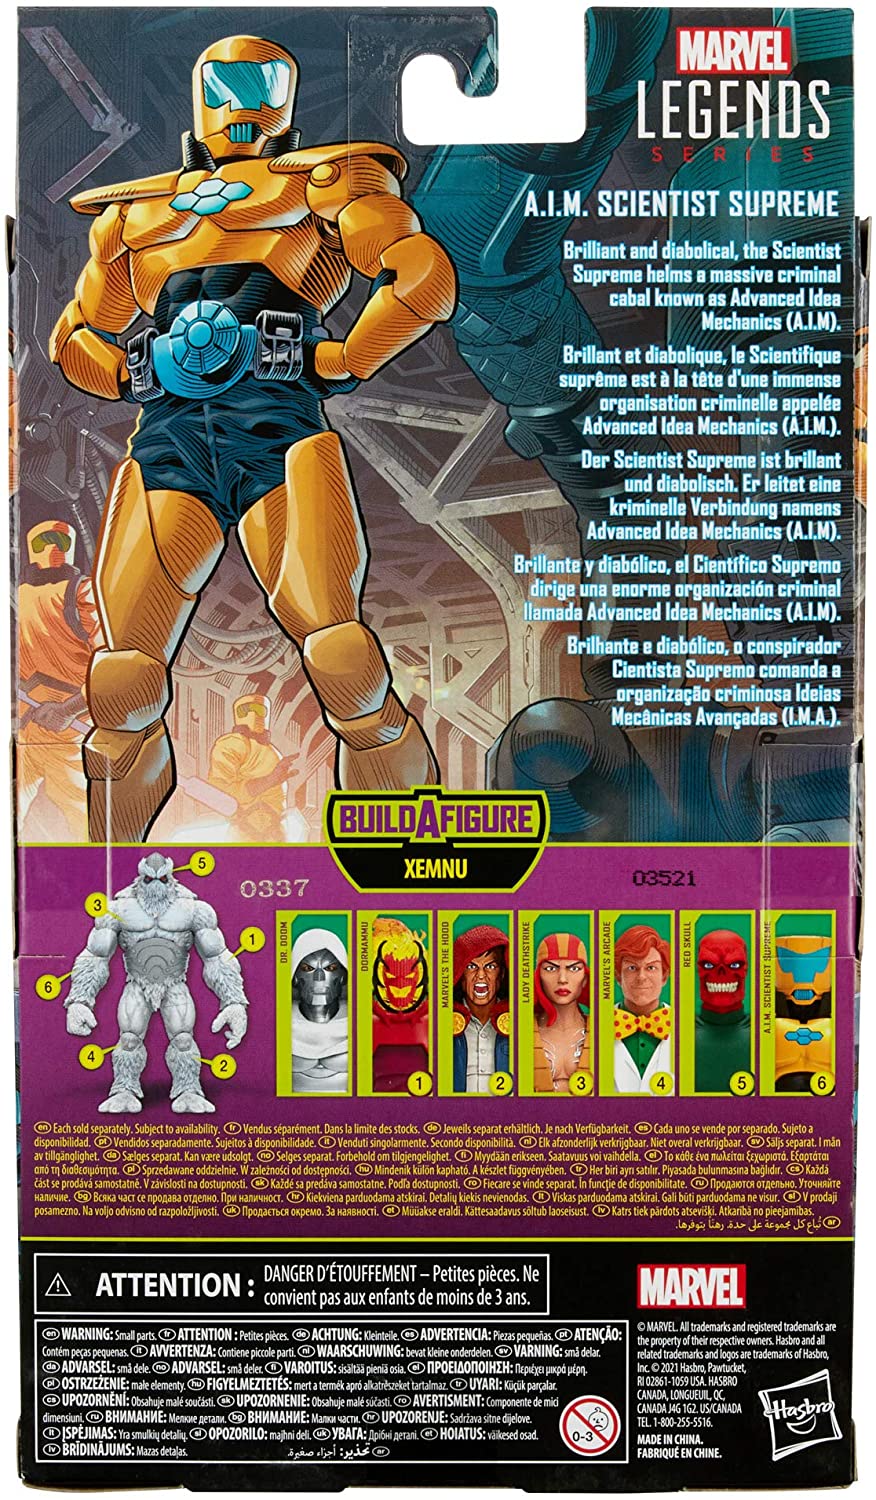 Hasbro Marvel Legends Series 15,2 cm große Actionfigur AIM Scientist Supreme zum Sammeln, 1 Zubehörteil und 1 Build-A-Figure-Teil